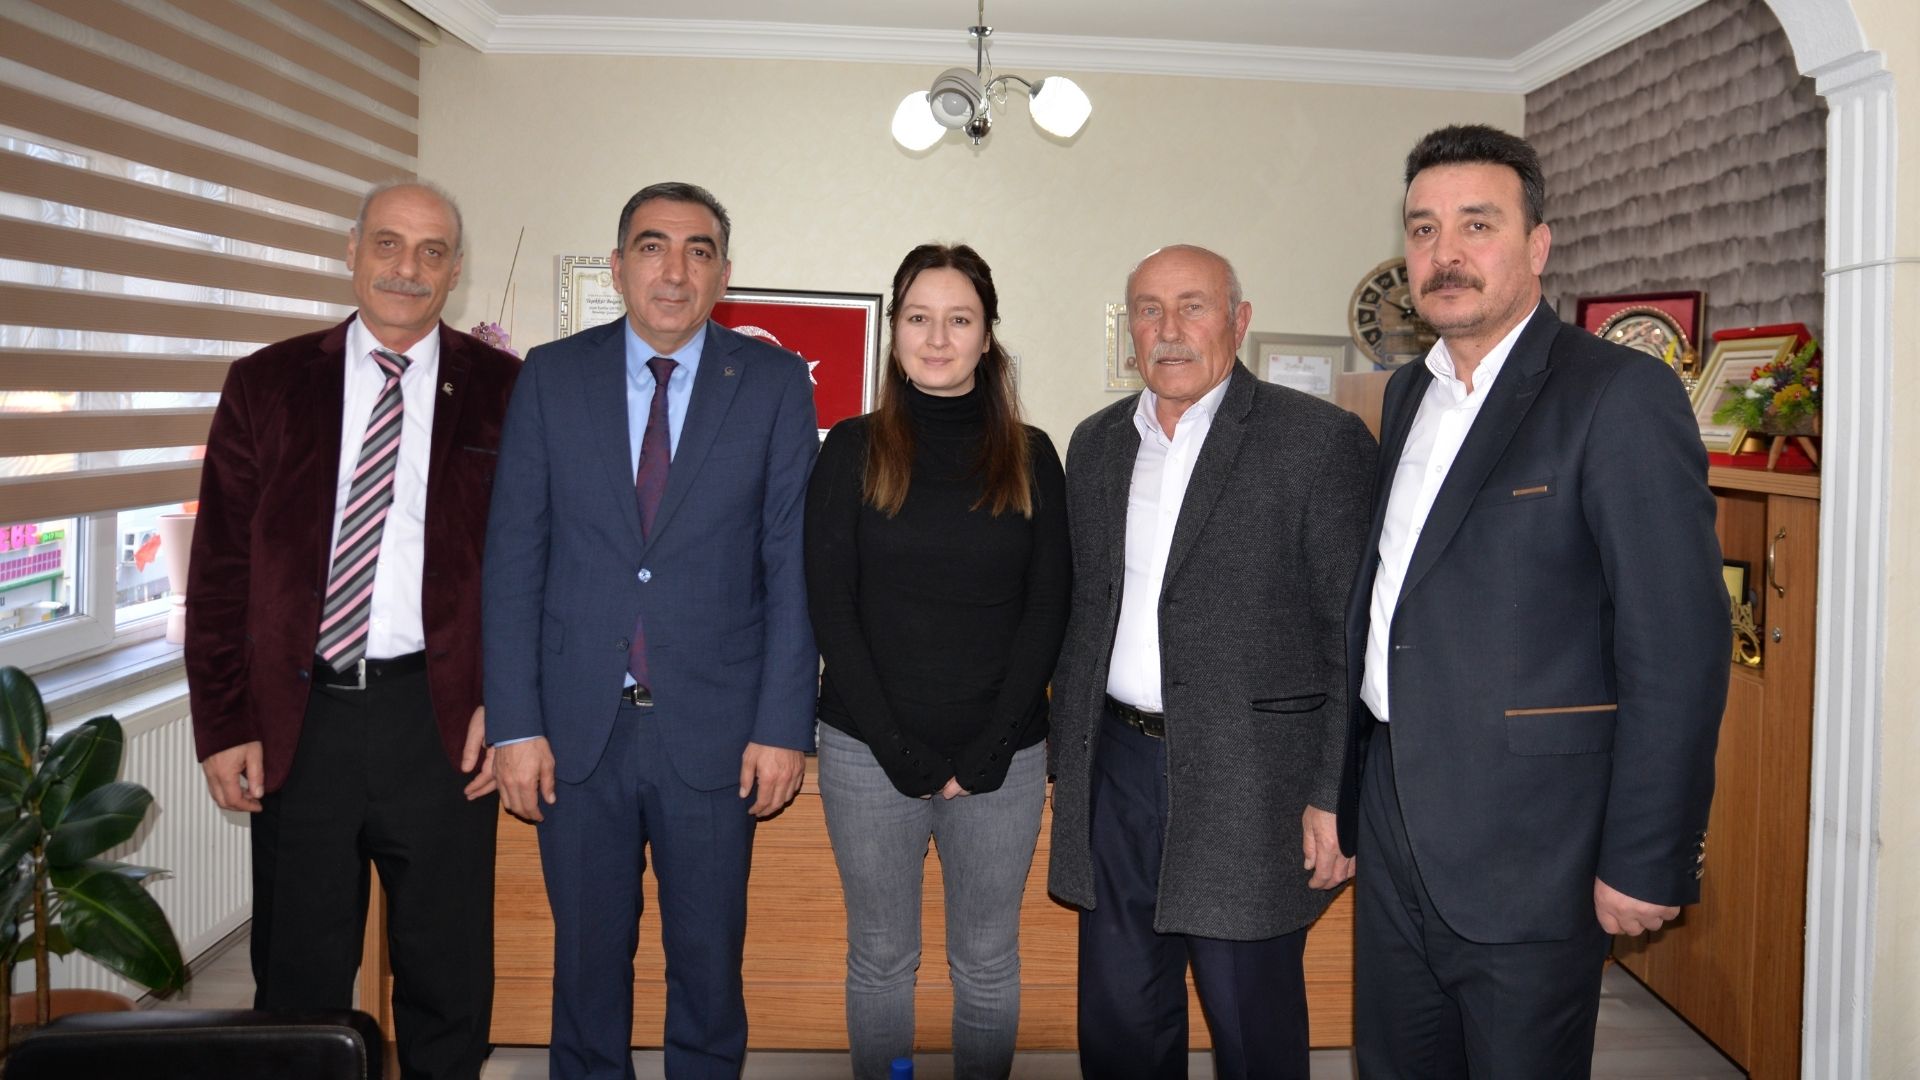 Milli Yol Partisi Sivas Belediye Başkan Adayı Zeki Haral Sefwefewfivas'ın Sorunlarını Çözeceğim